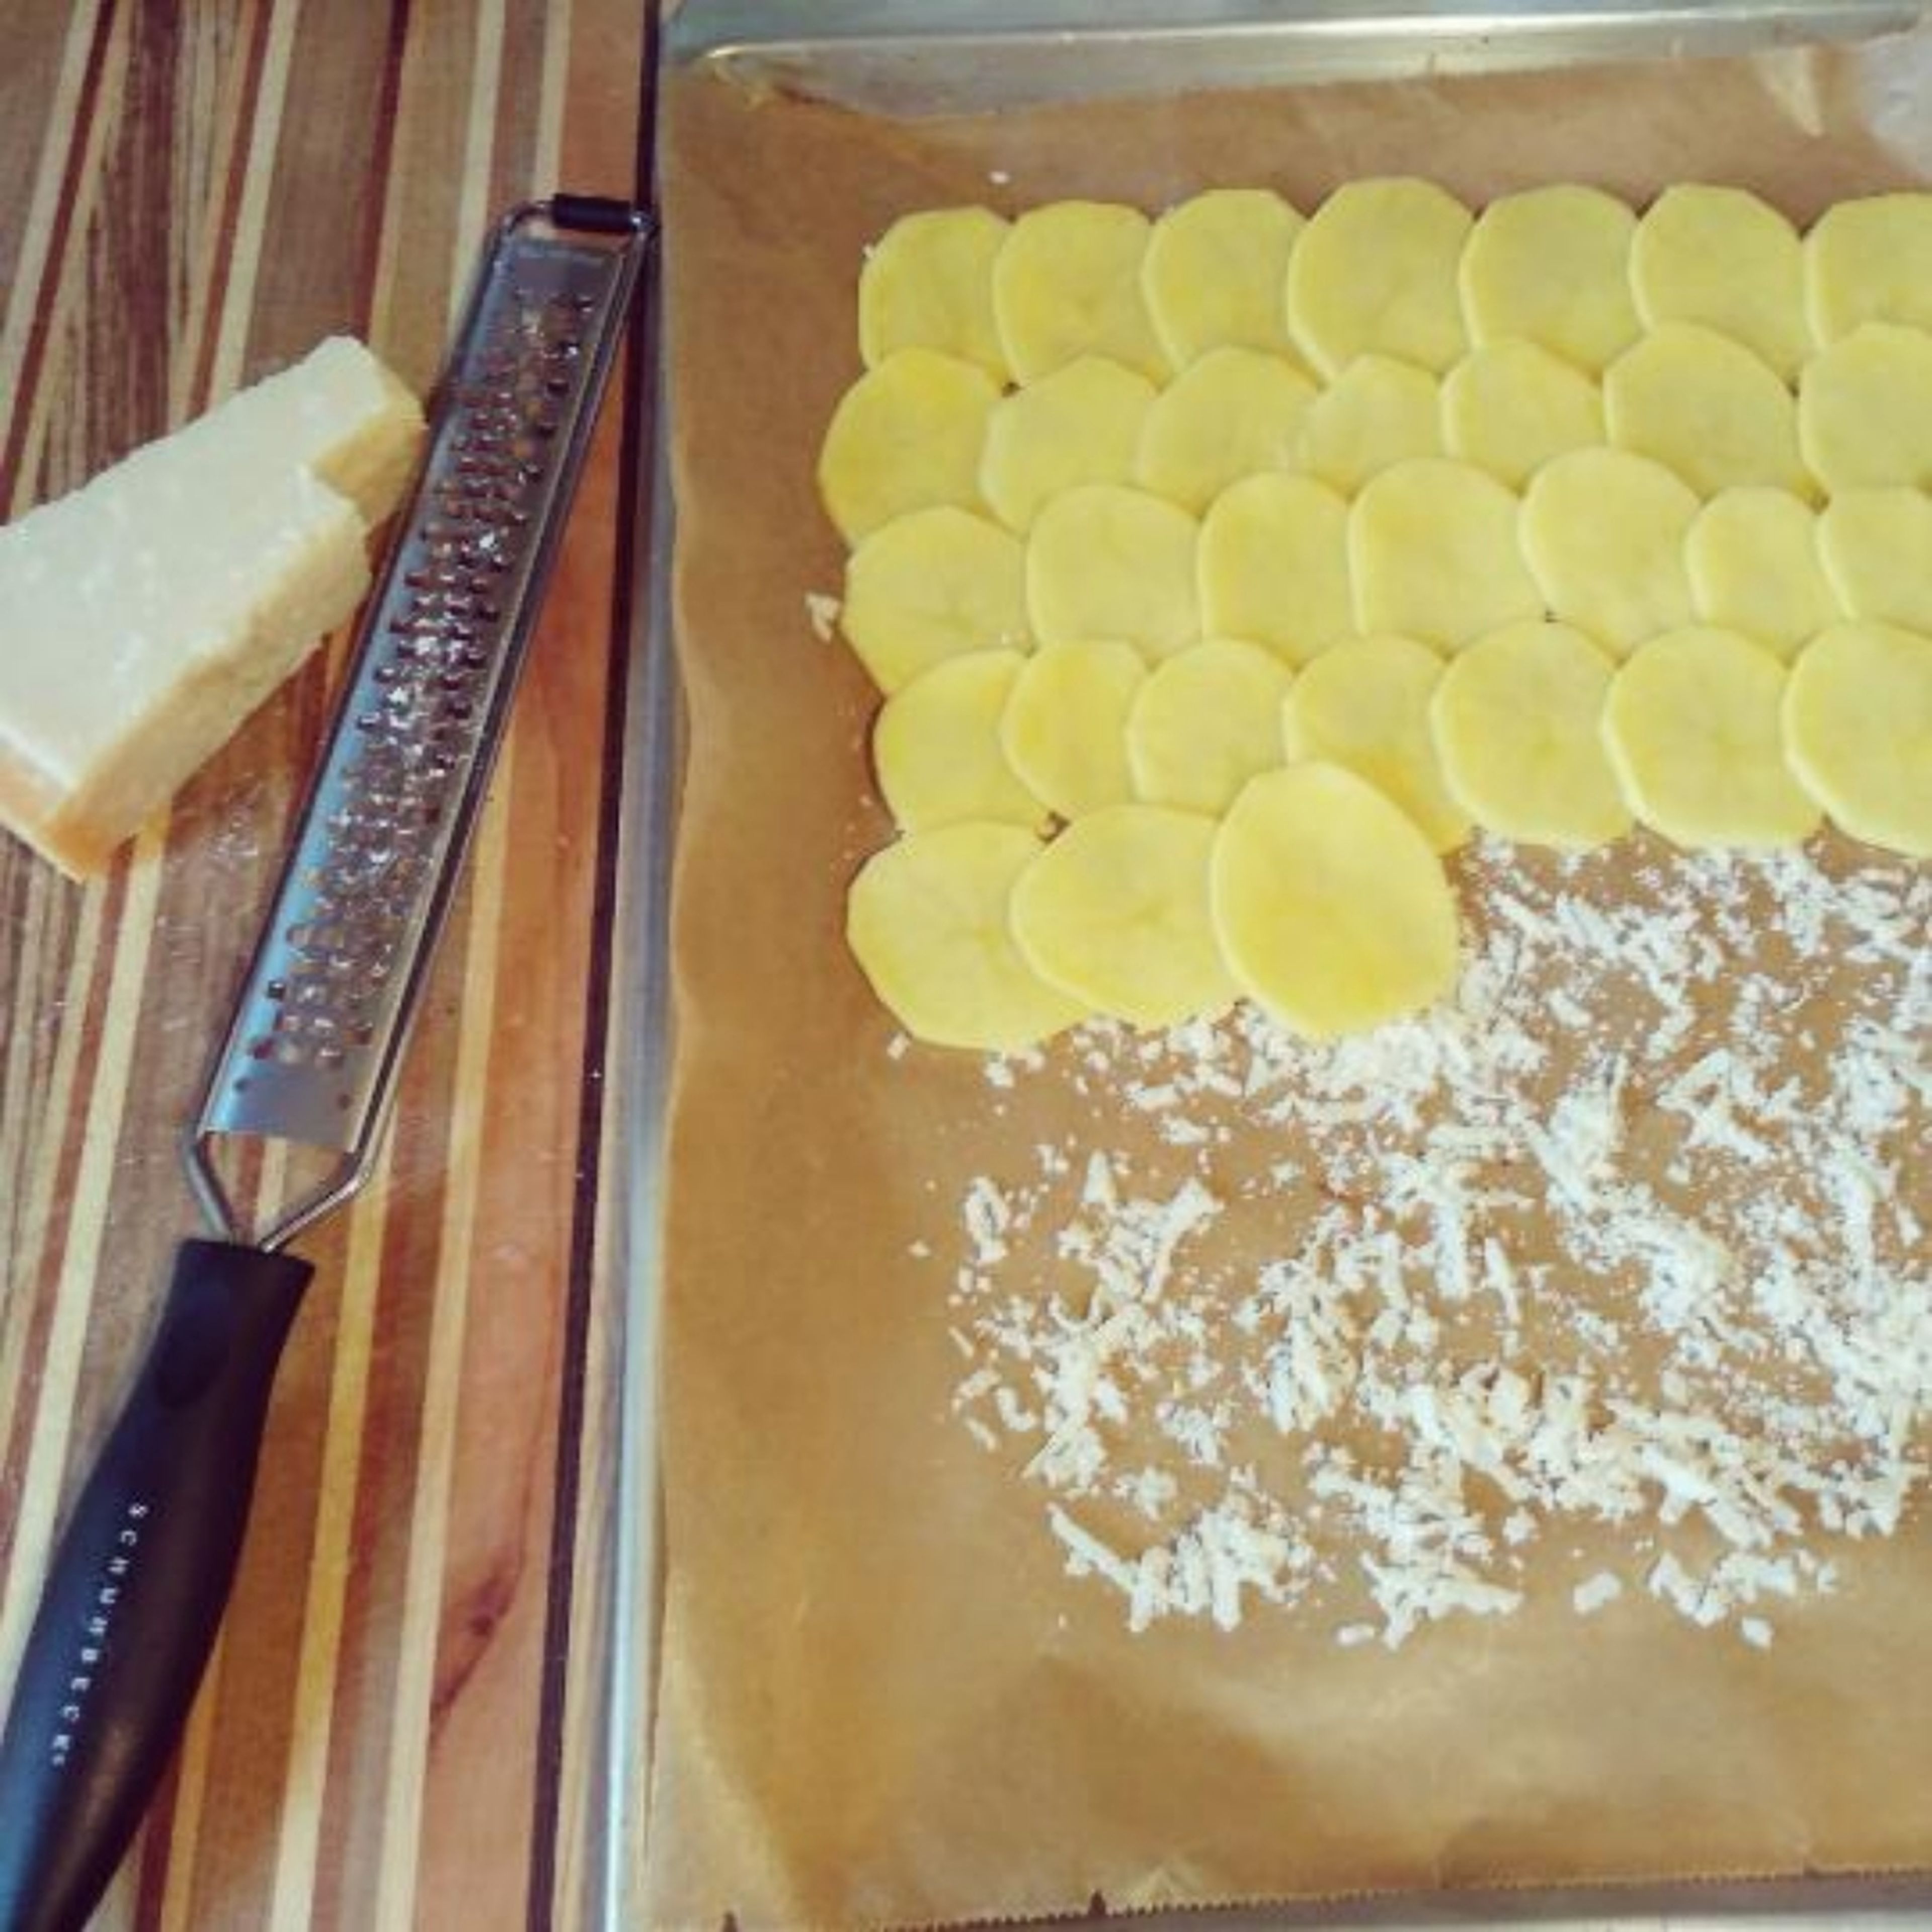 Ofen auf 180° Grad Umluft vorheizen. Auf ein Backpapier Parmesan reiben und verteilen. Kartoffeln schälen, in 2 mm dicke Scheiben hobeln und mit etwas Überlappung auf den Parmesan schlichten. 20 -25 Minuten backen.